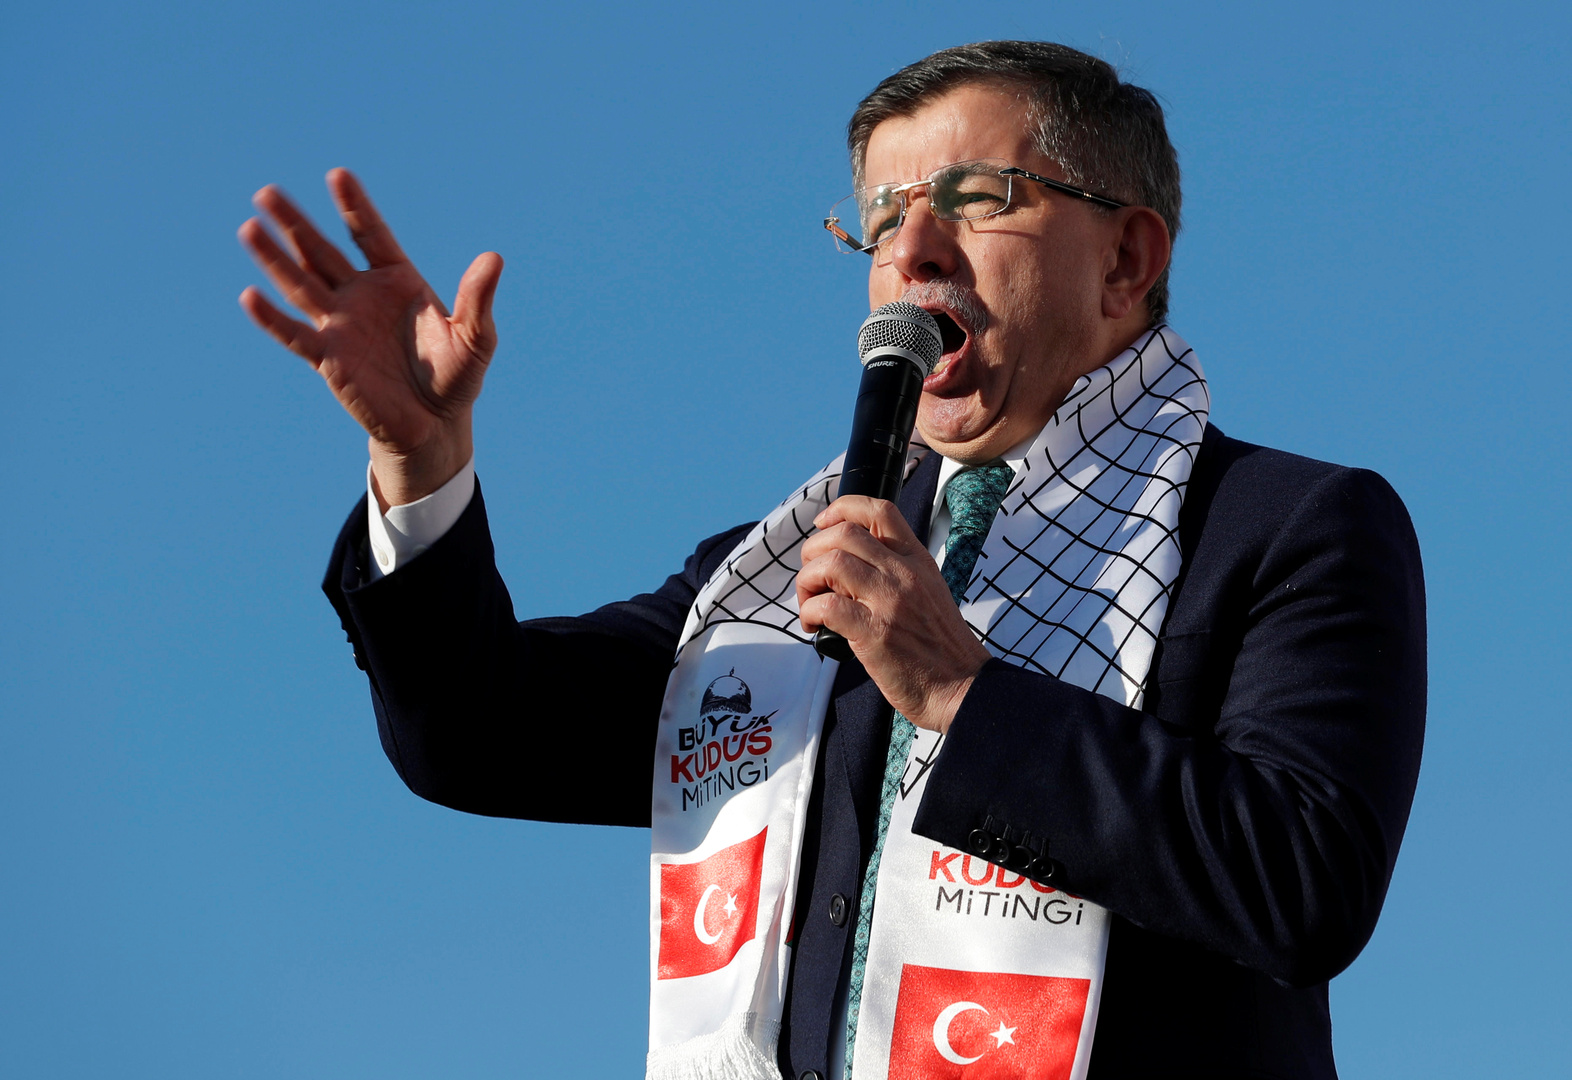 داوود أوغلو: على أردوغان اتخاذ قرار عاجل لإجراء انتخابات مبكرة في تركيا